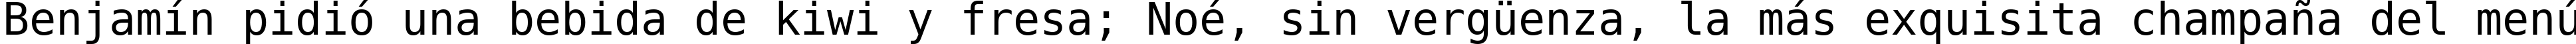 Пример написания шрифтом DejaVu Sans Mono текста на испанском